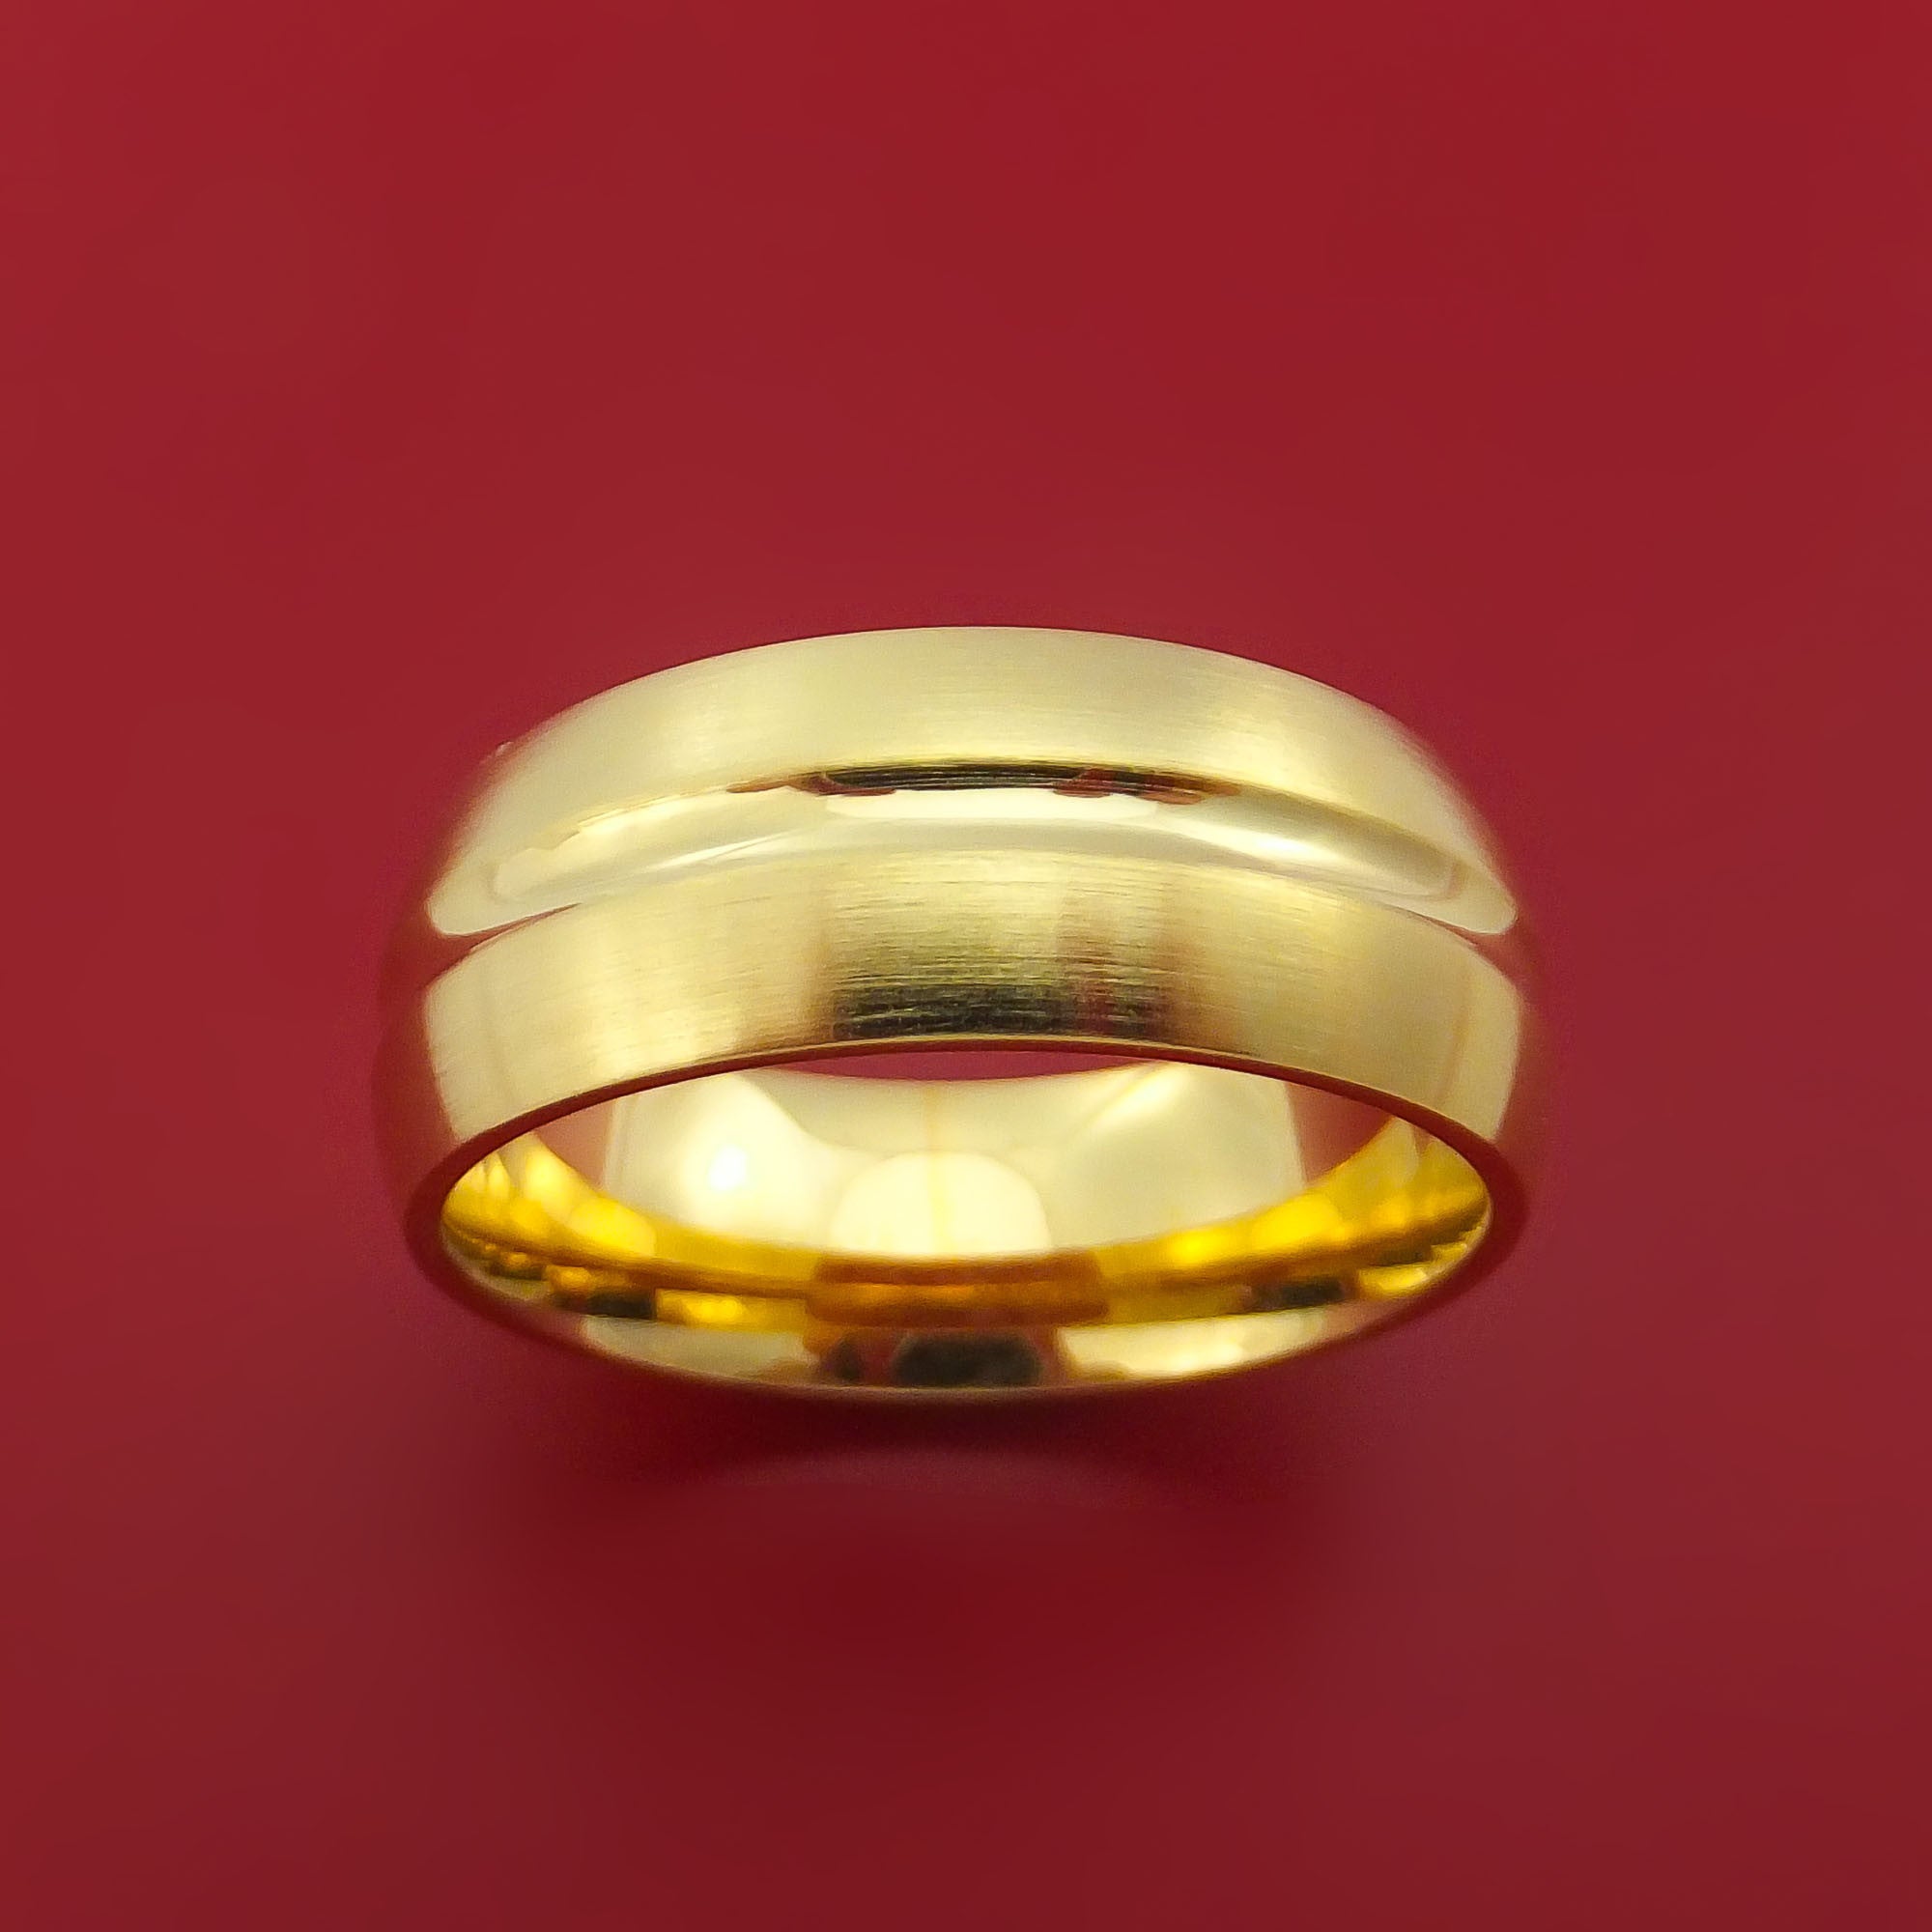 Gold man ring at Rs 300/gram | Alwar | ID: 2852158636330